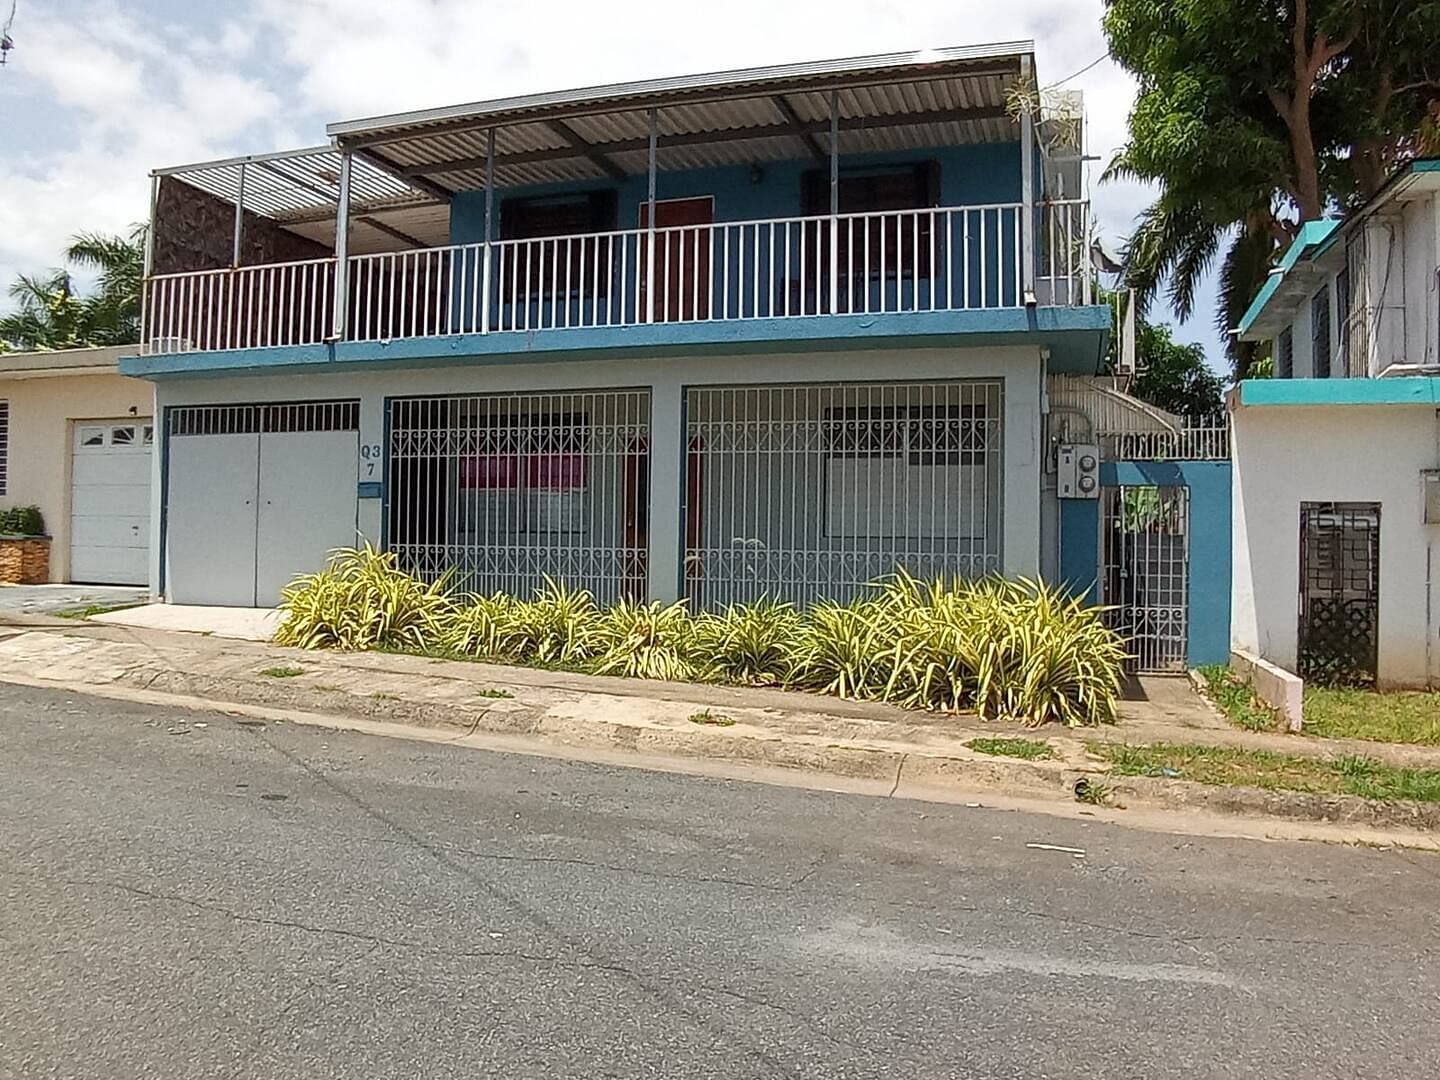 JWguest Apartment at San Juan, San Juan | LasLomas 4B Bunkers Bedroom #2 | Jwbnb no brobnb 18